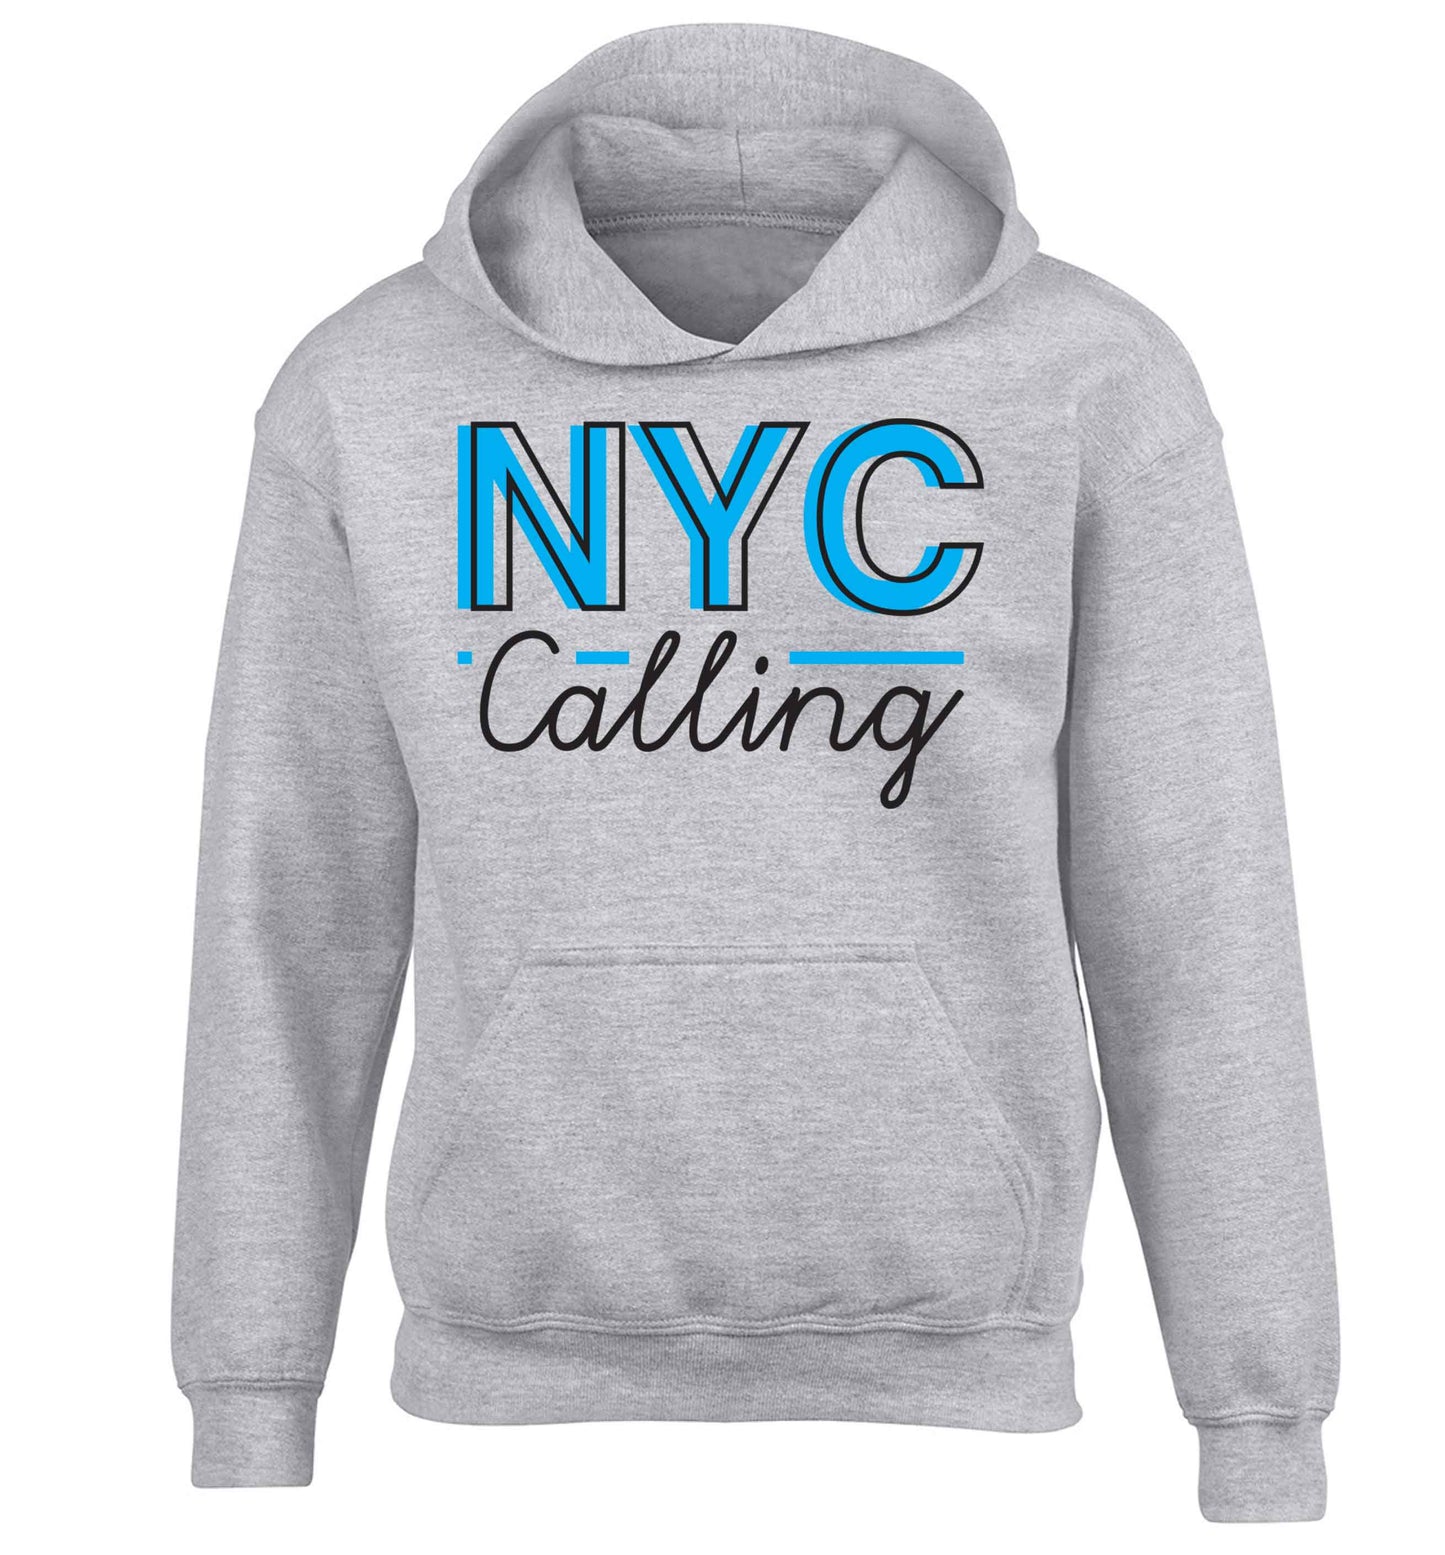 NYC calling children's grey hoodie 12-13 Years